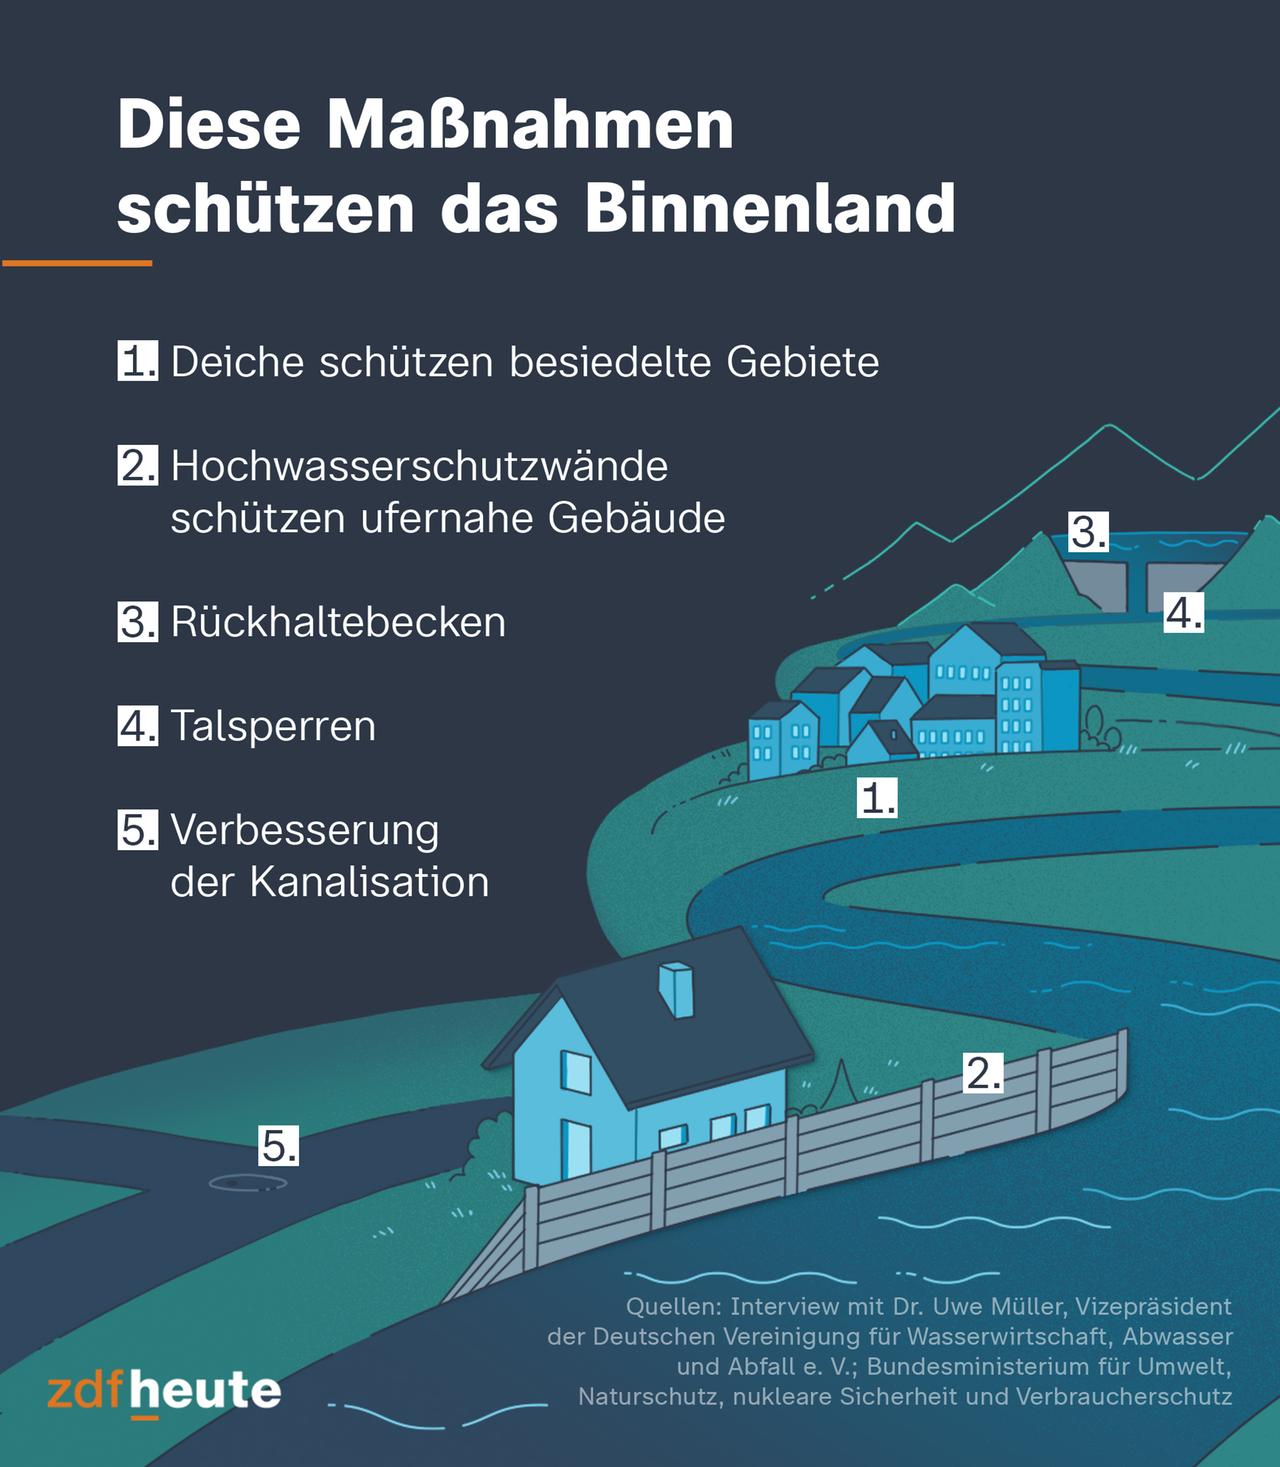 Welche Maßnahmen helfen gegen Hochwasser? Die Infografik zeigt, dass Deiche besiedelte Gebiete schützen. Wenn Gebäude direkt am Ufer stehen, können Hochwasserschutzwände helfen. Des Weiteren gibt es Rückhaltebecken und Talsperren - aber auch die Kanalisation kann verbessert werden.